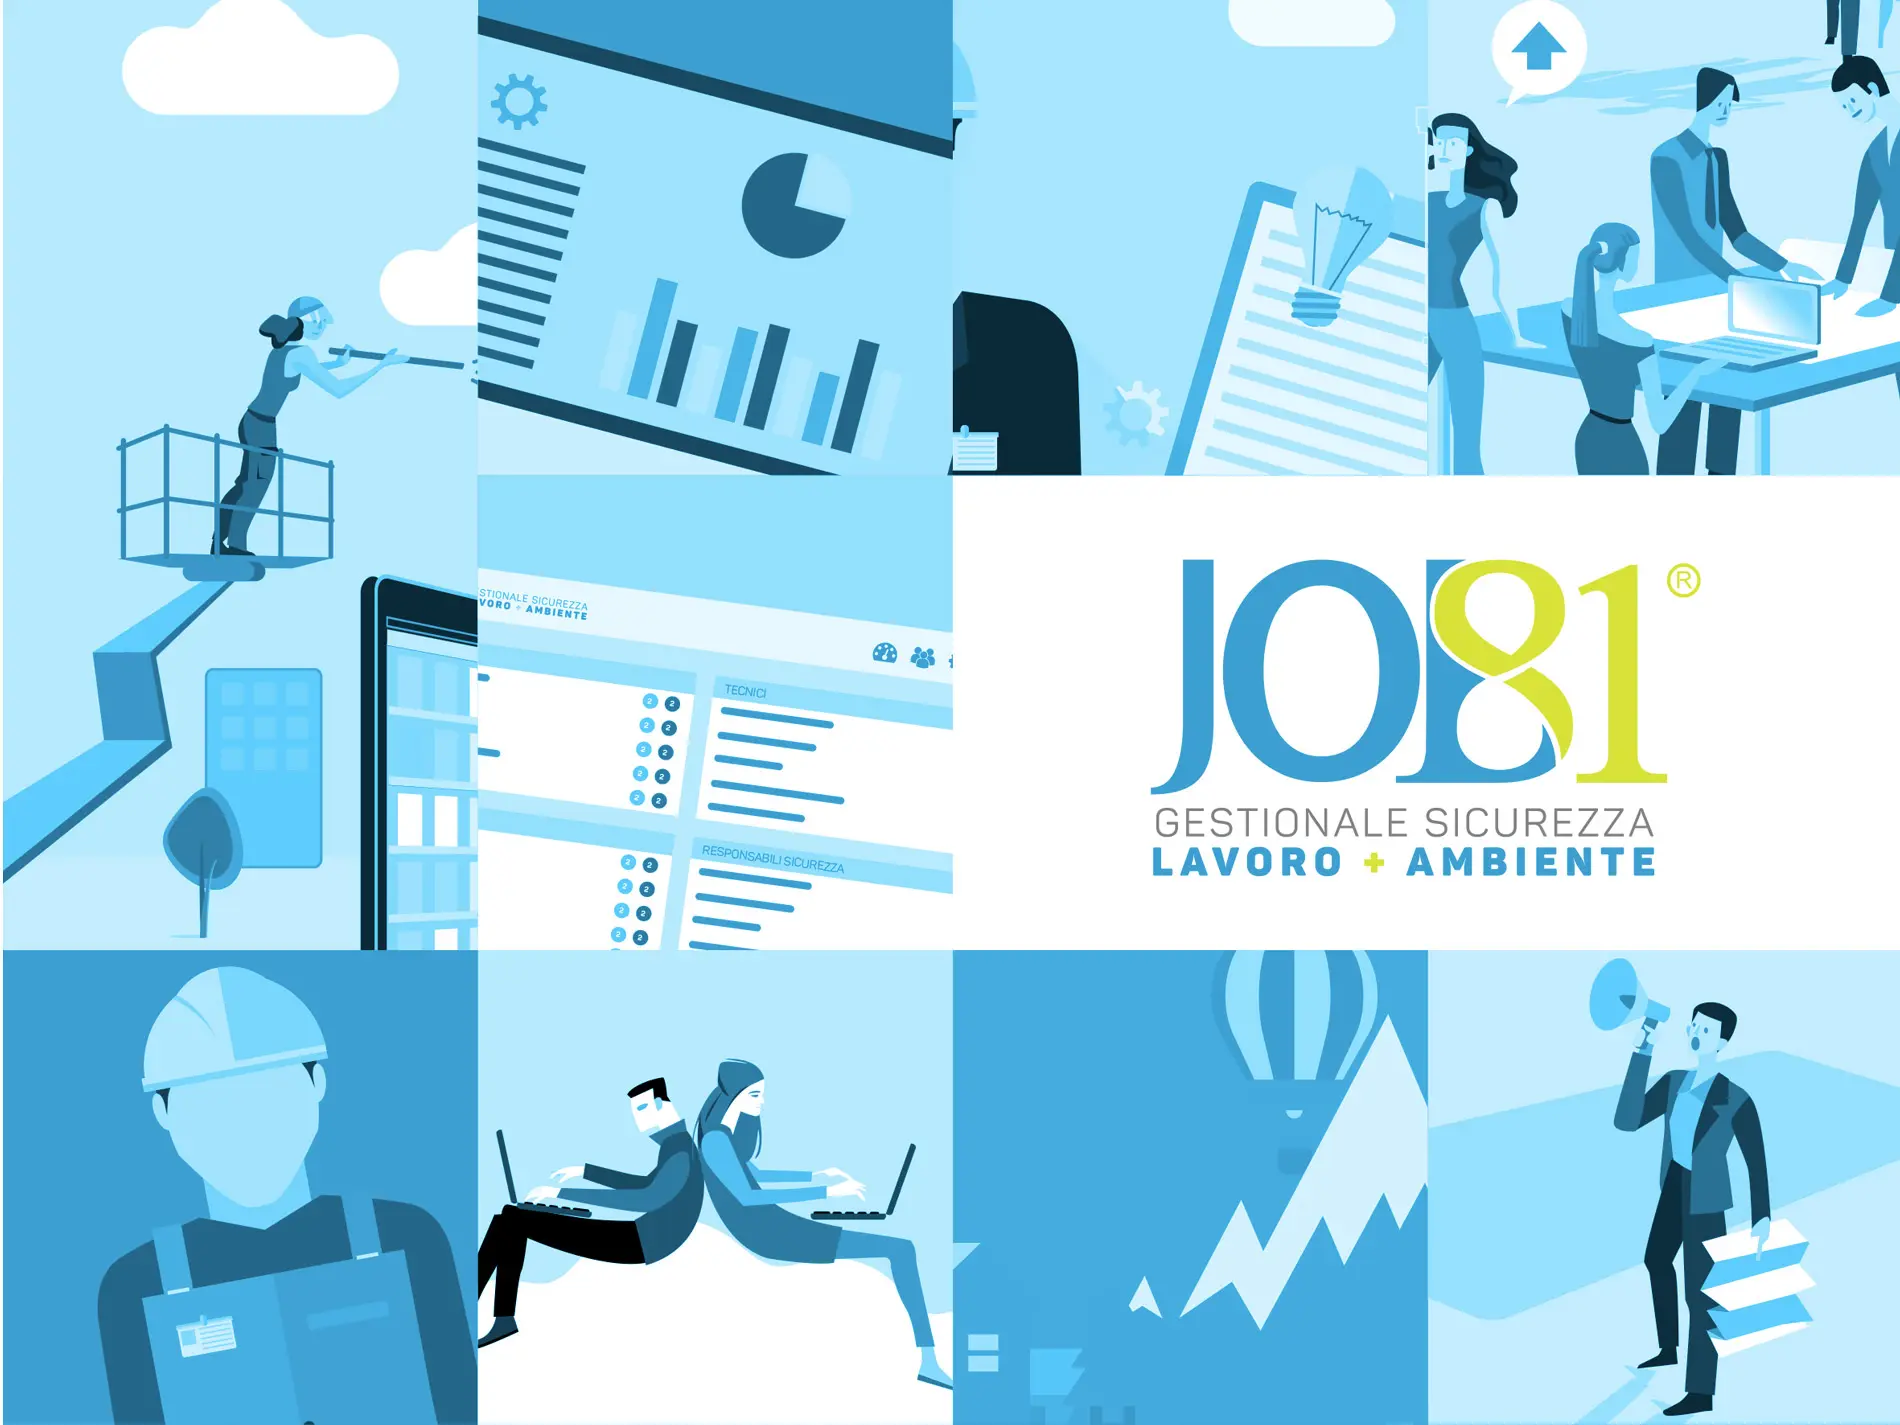 E’ online il nuovo sito web di Job81, il software per la sicurezza sul lavoro